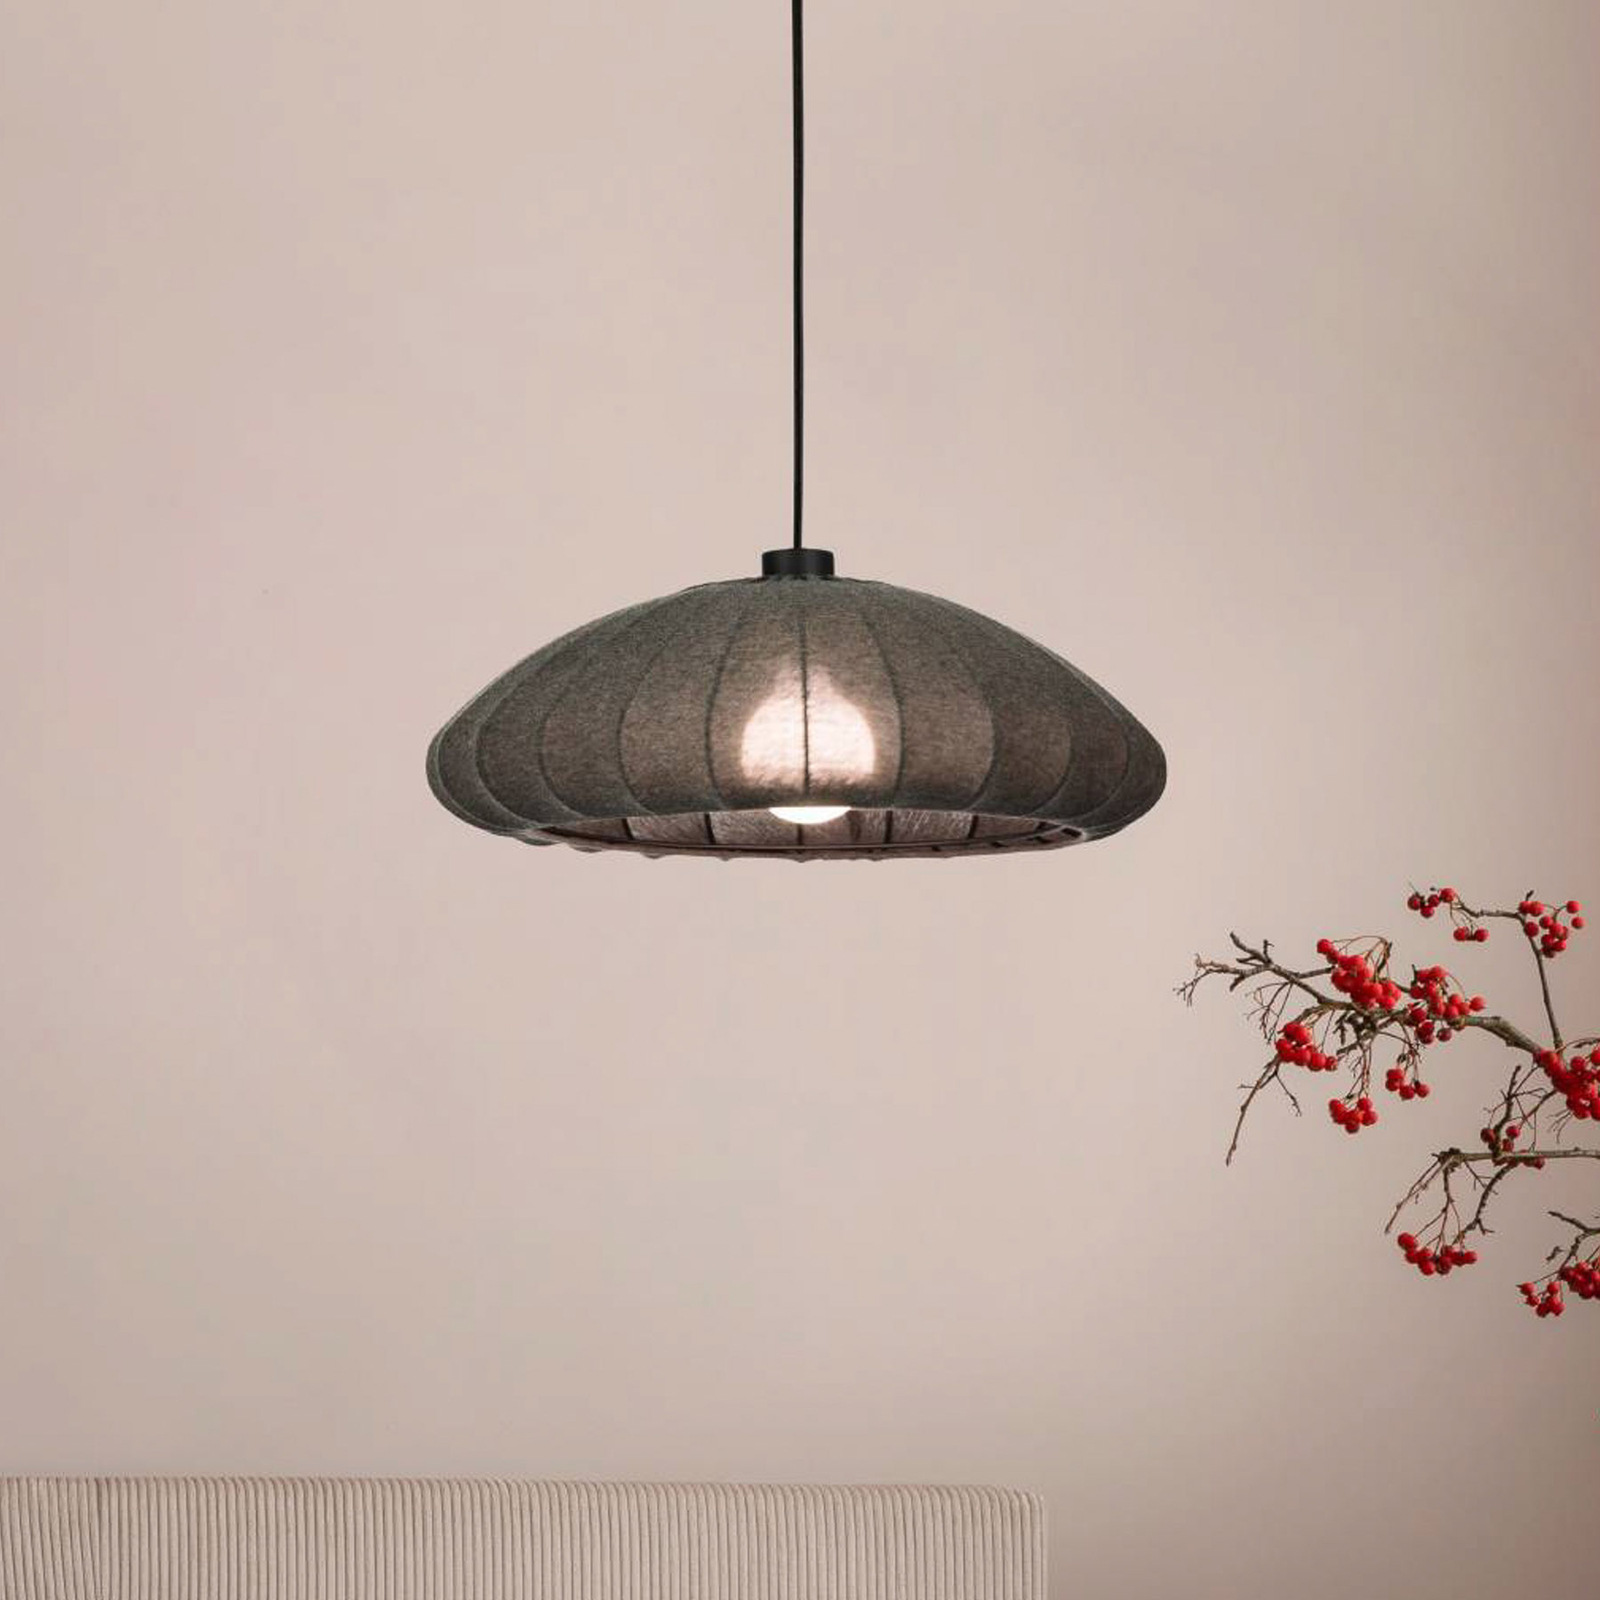 Barlaston hanging light, fabric lampshade, 1-bulb